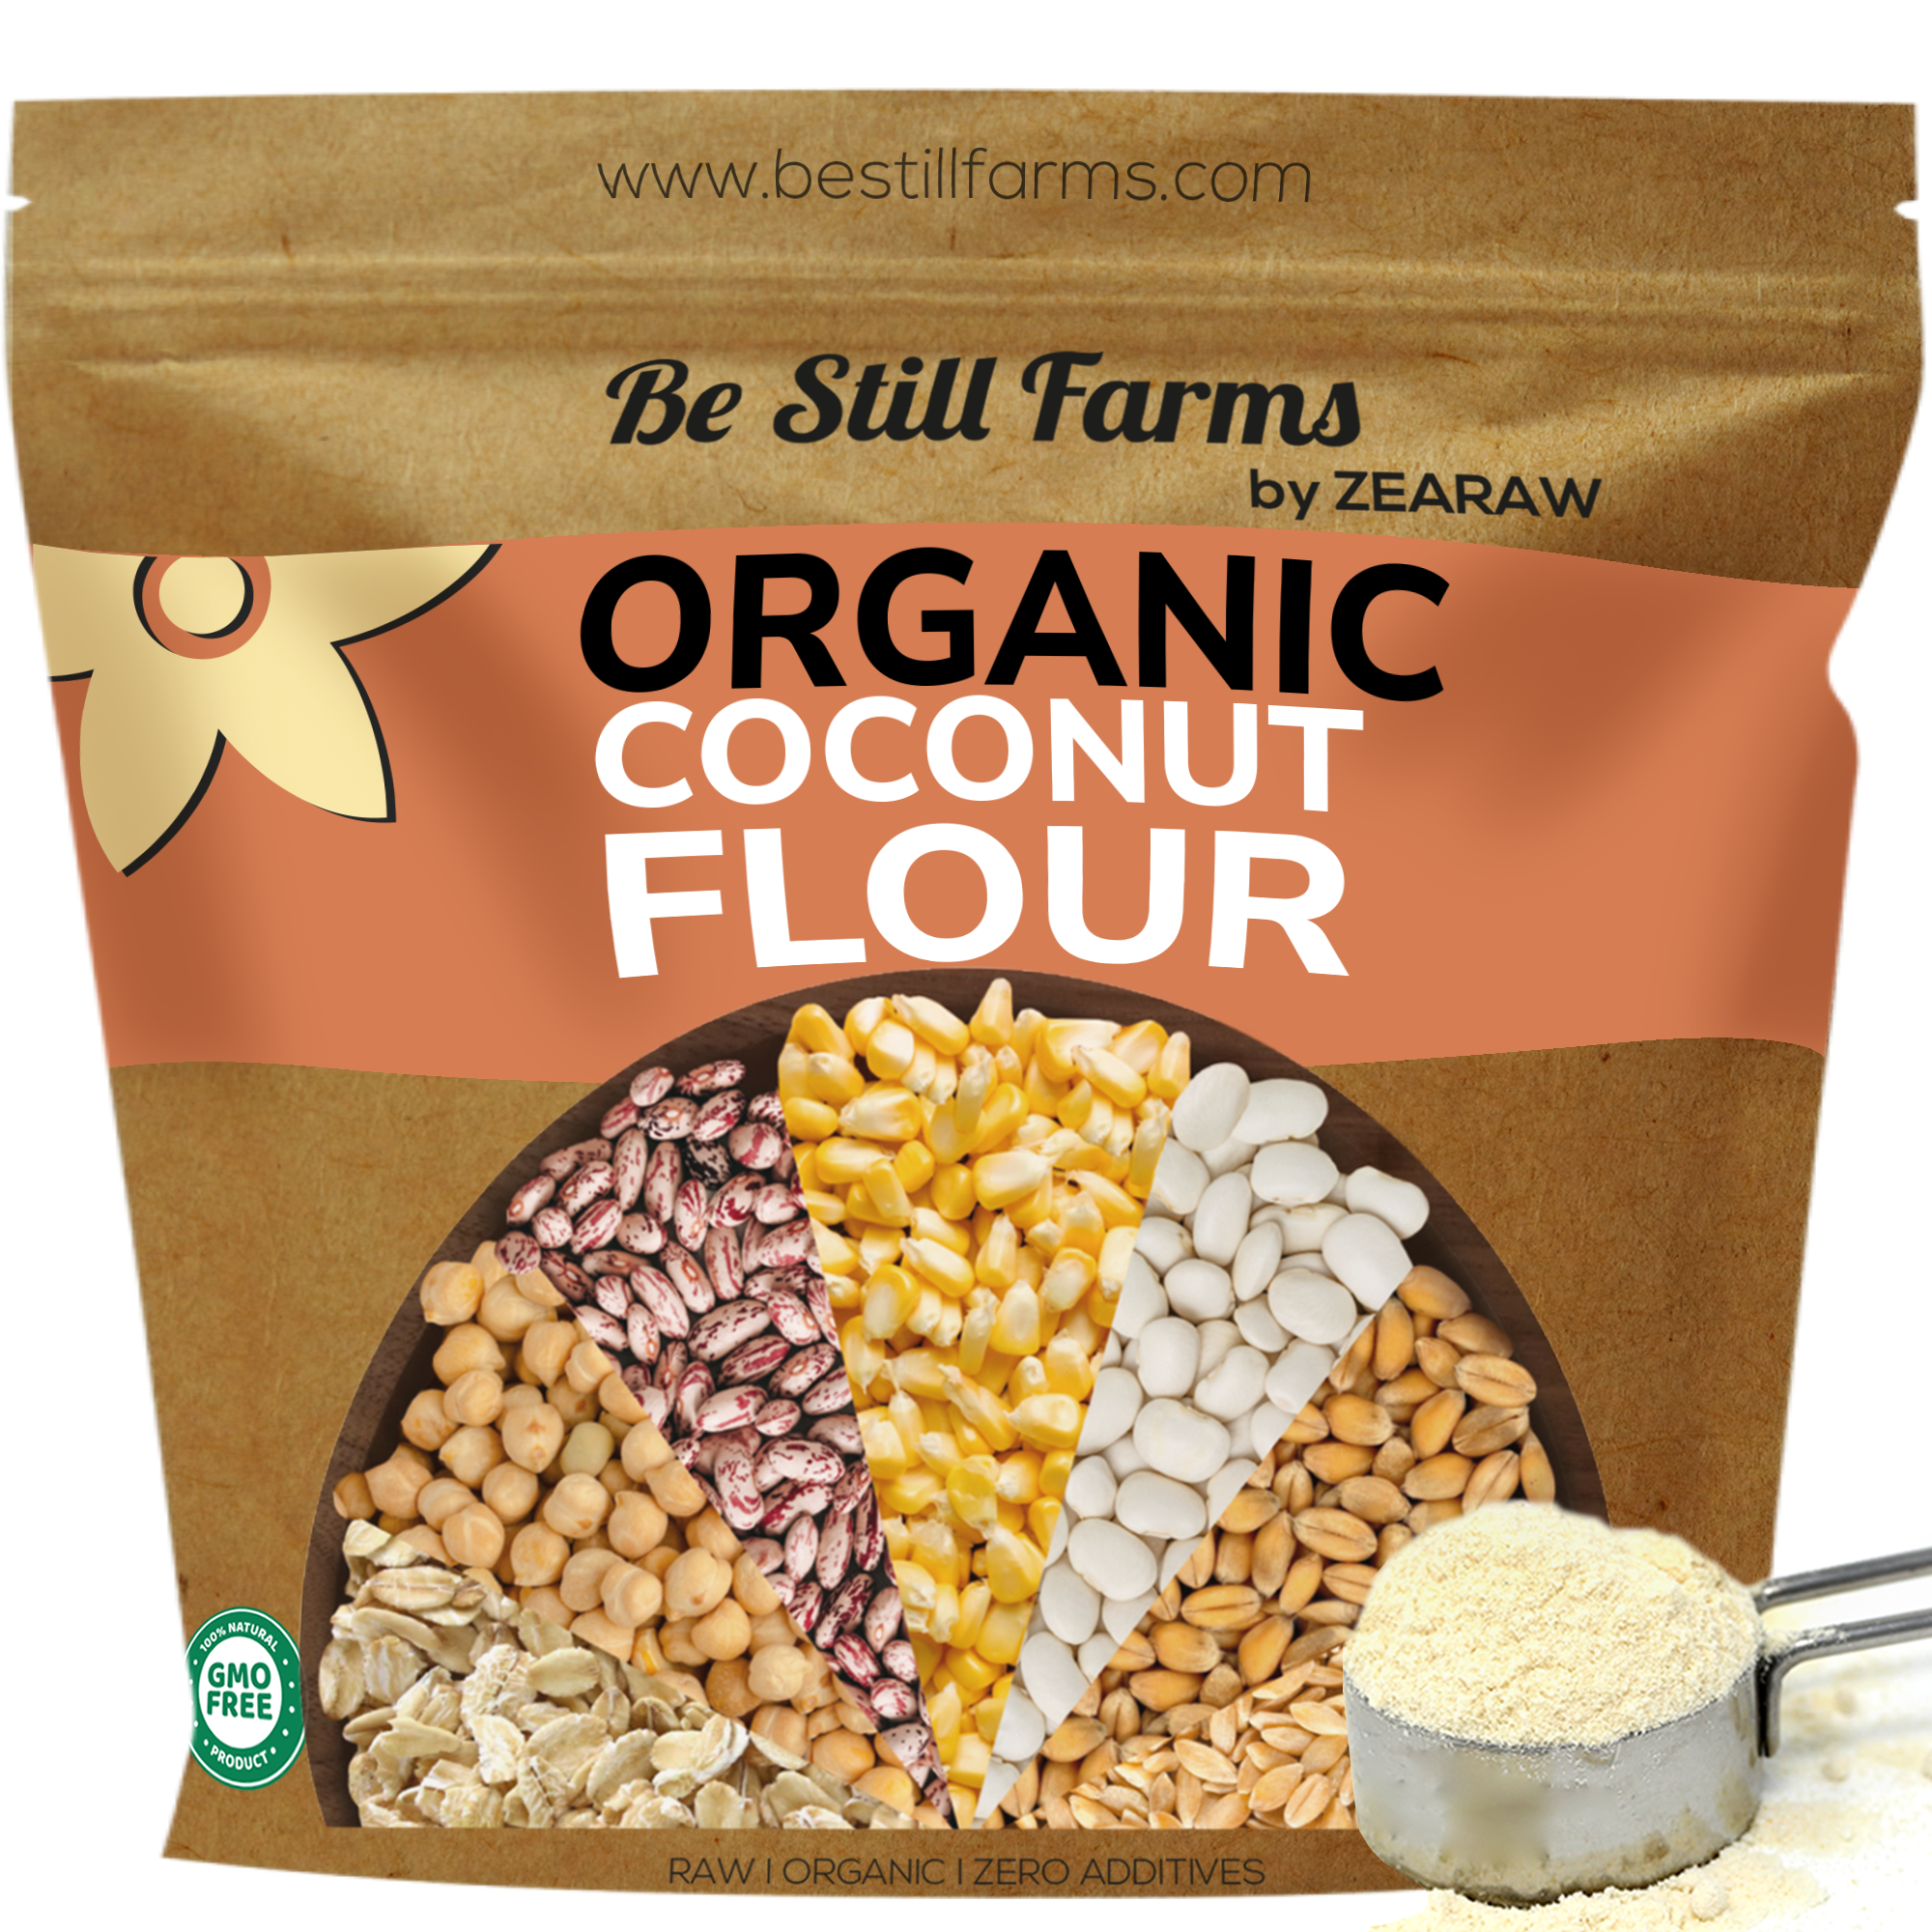 Organic Coconut Flour - Be Still Farms